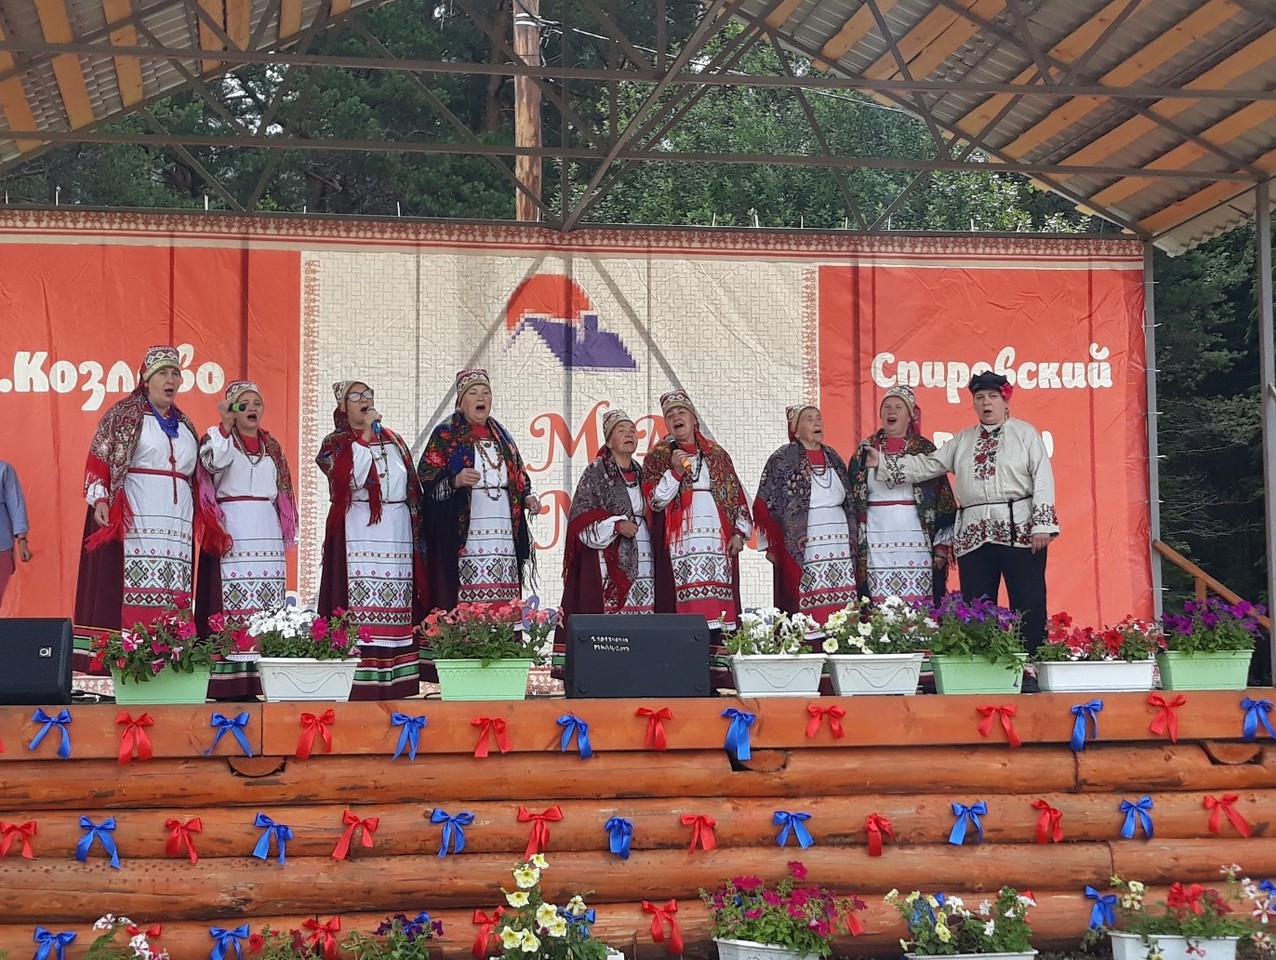 фото из ВК, группа "Козловский фестиваль карельской культуры OMARANDA"